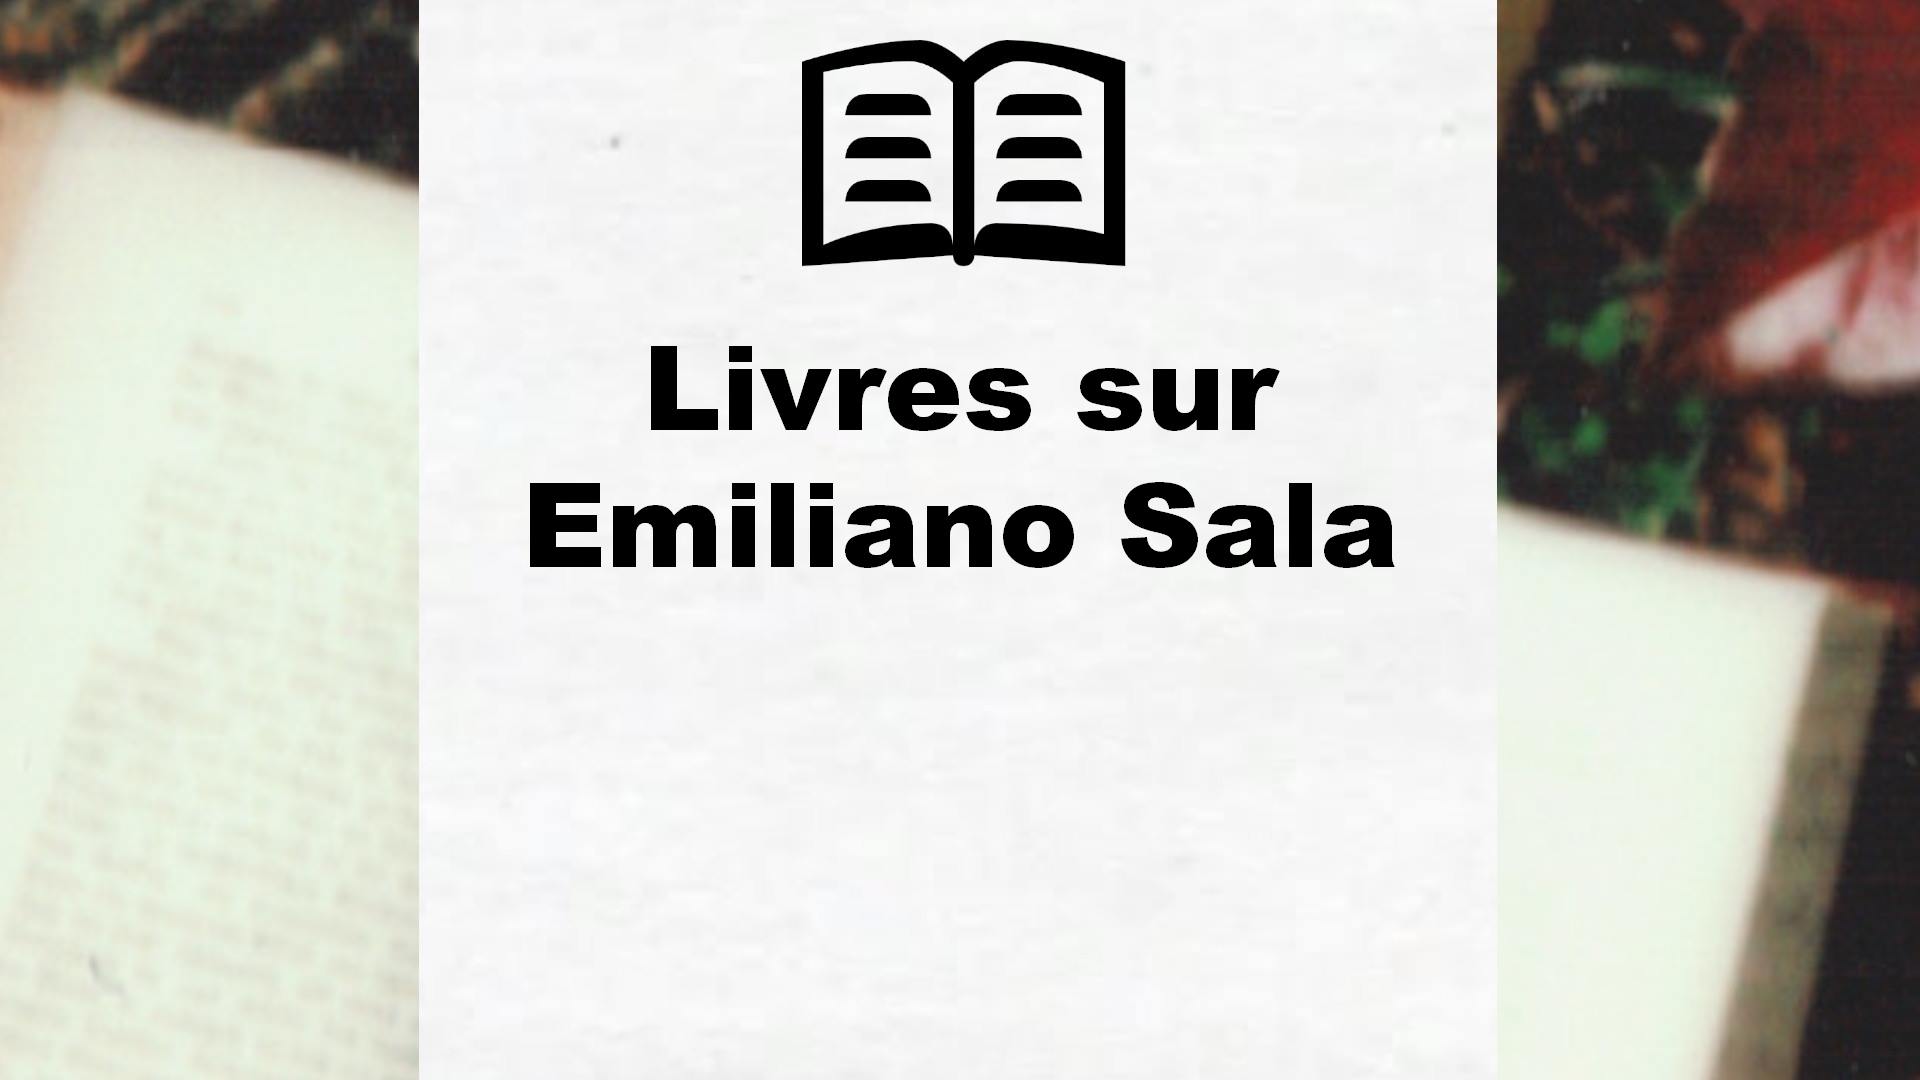 Livres sur Emiliano Sala